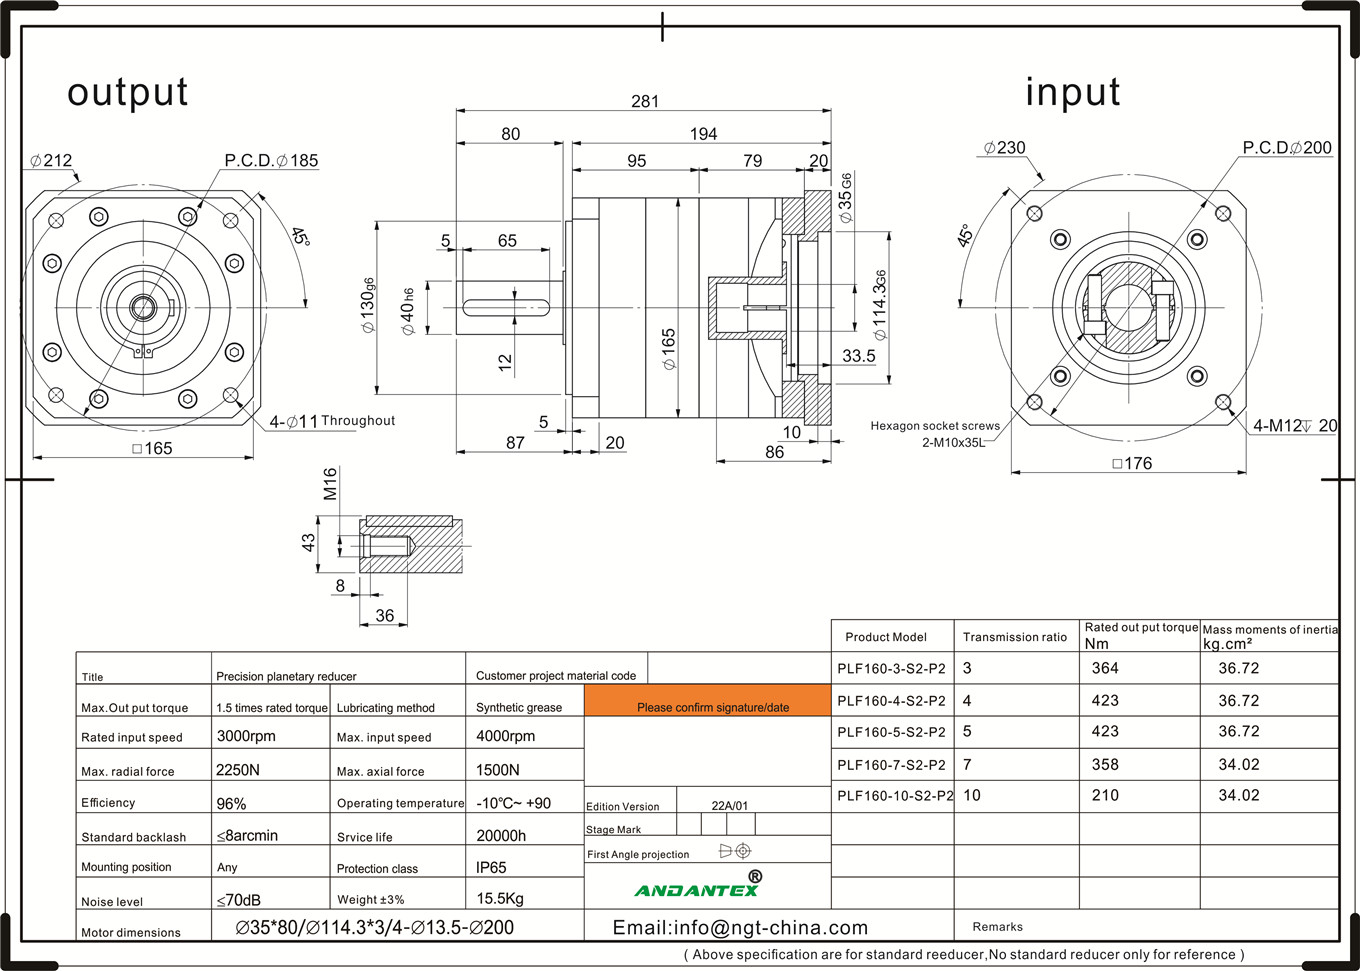 Andantex plf160-7-s2-p2 Standard Serie planetaresch Gearboxen a Verpackungsmaschinn Ausrüstung-01